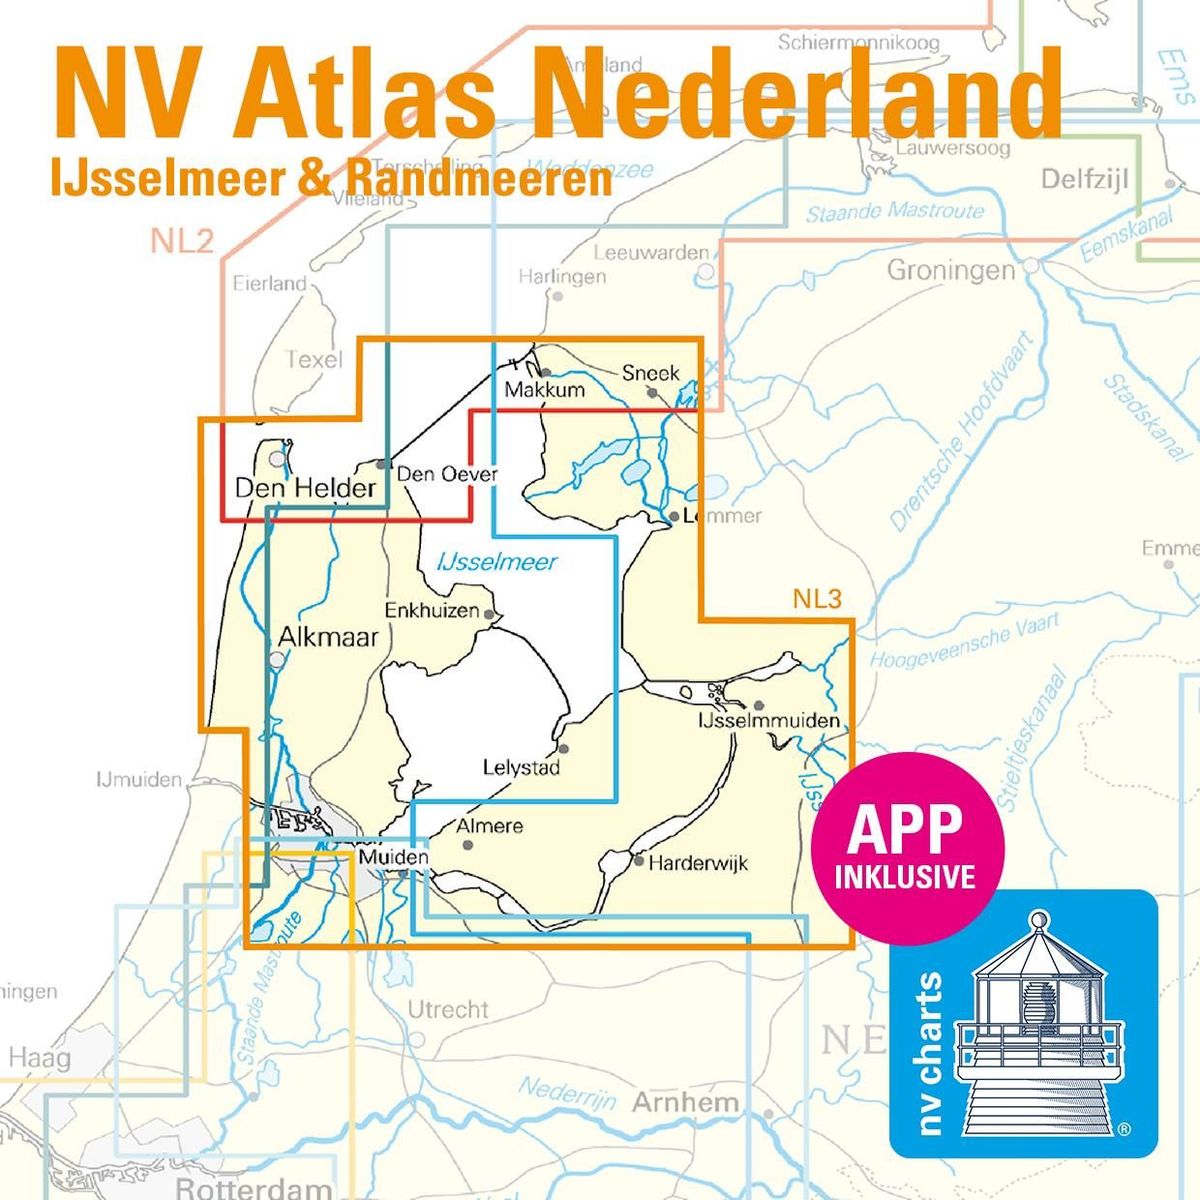 NV Atlas Nederland NL3 IJsselmeer & Randmeeren